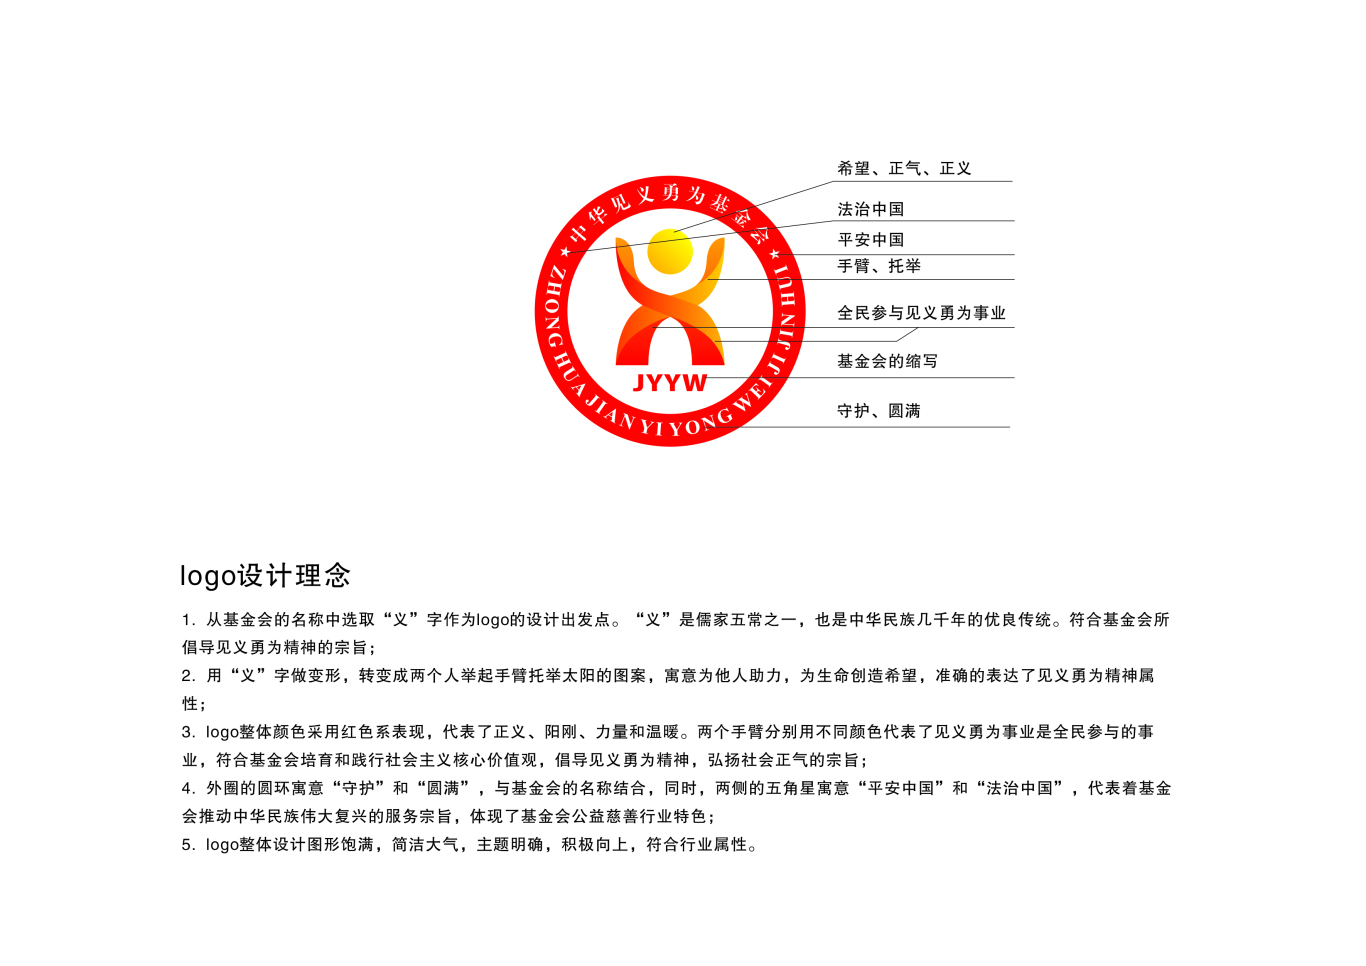 中华见义勇为基金会logo图1